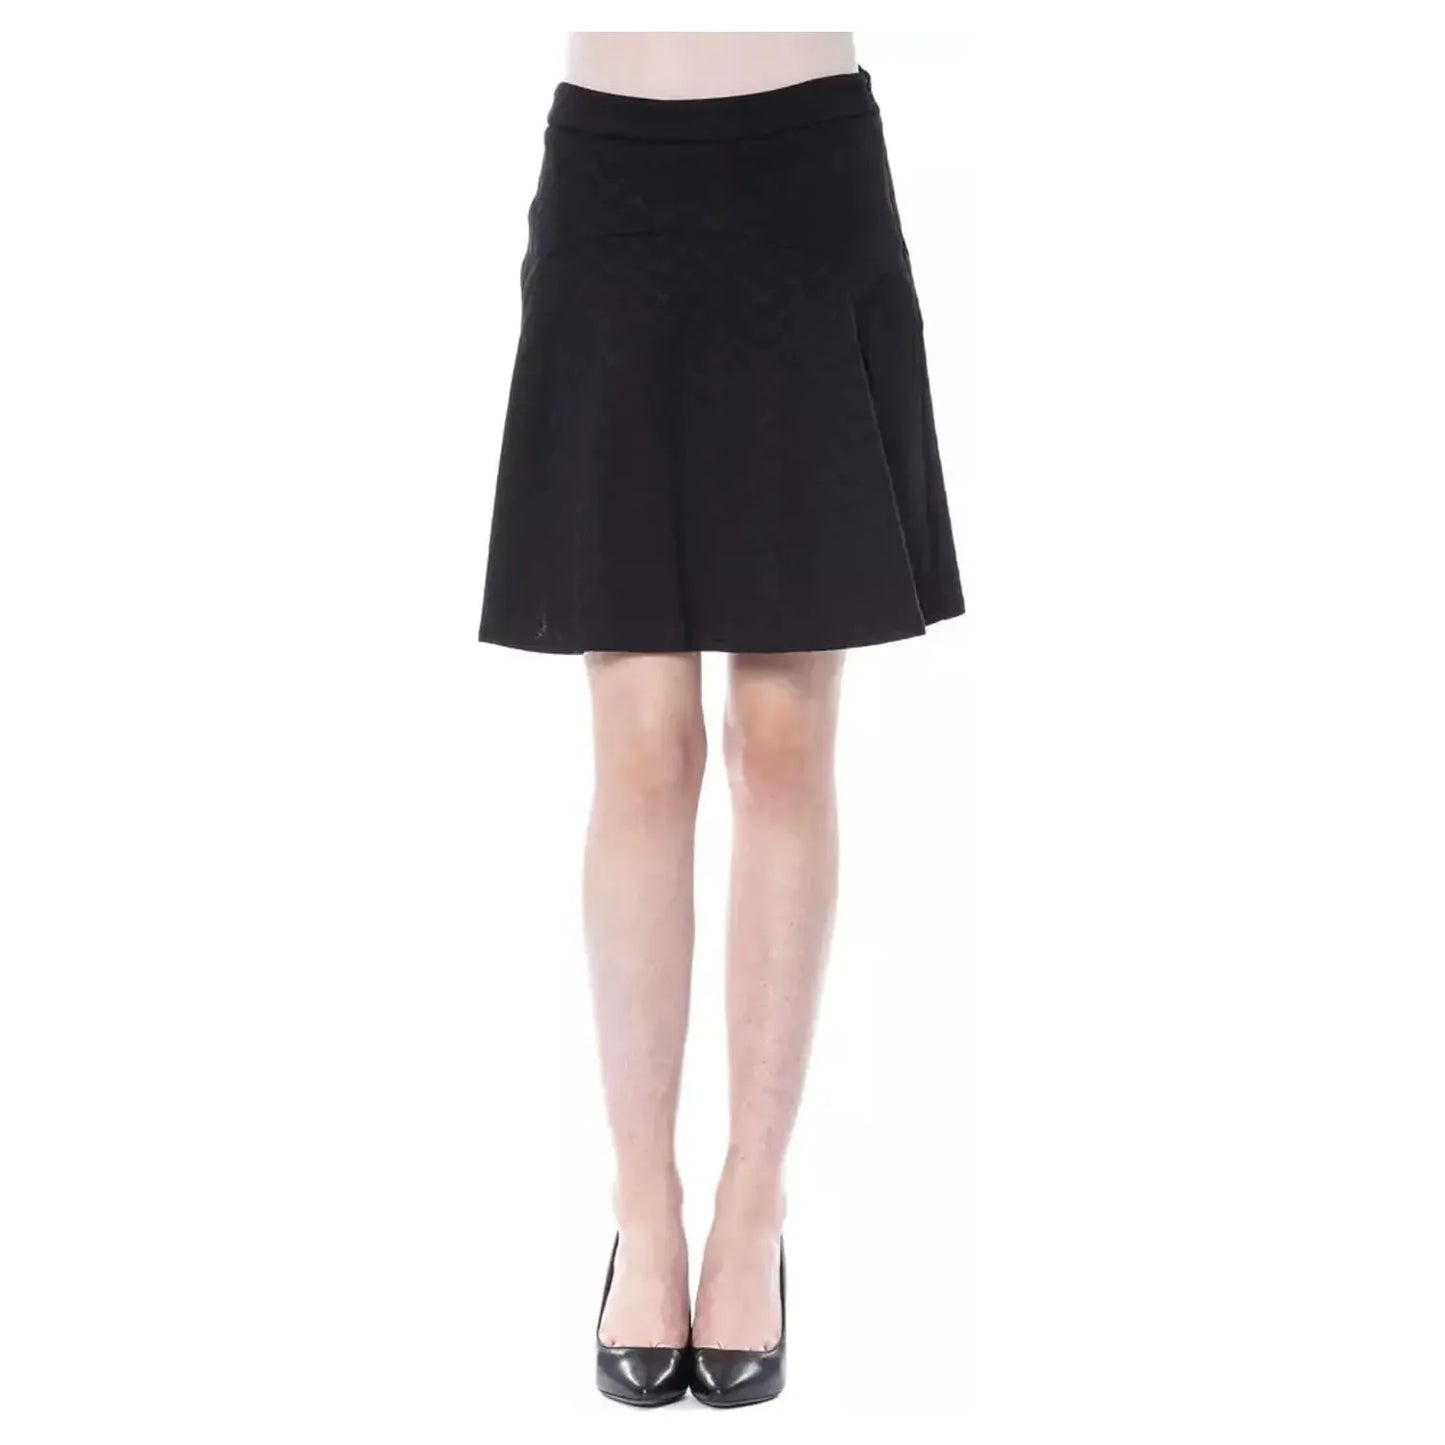 BYBLOS Elegant Black Tube Skirt for Sophisticated Evenings WOMAN SKIRTS black-polyester-skirt-5